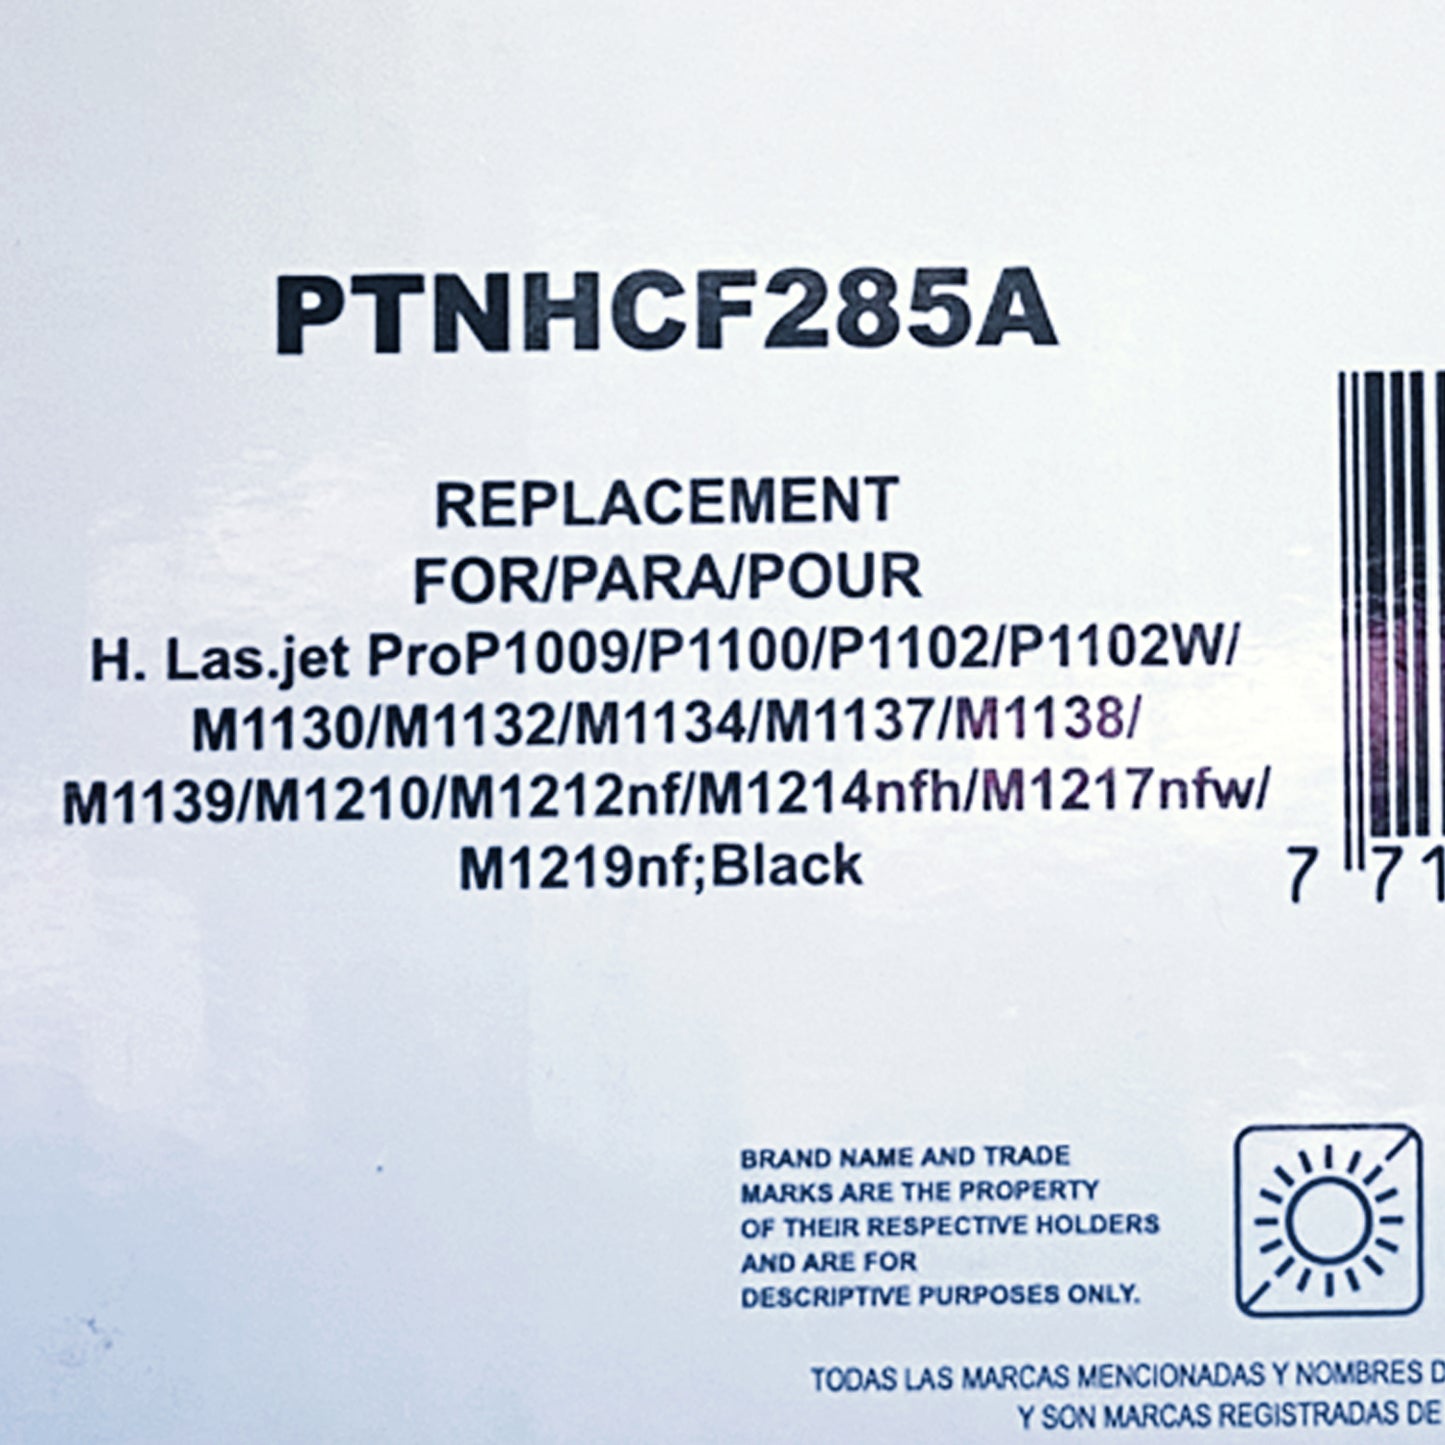 Toner Pacific Color Ptnhcf285A Compatible con Laser Jet